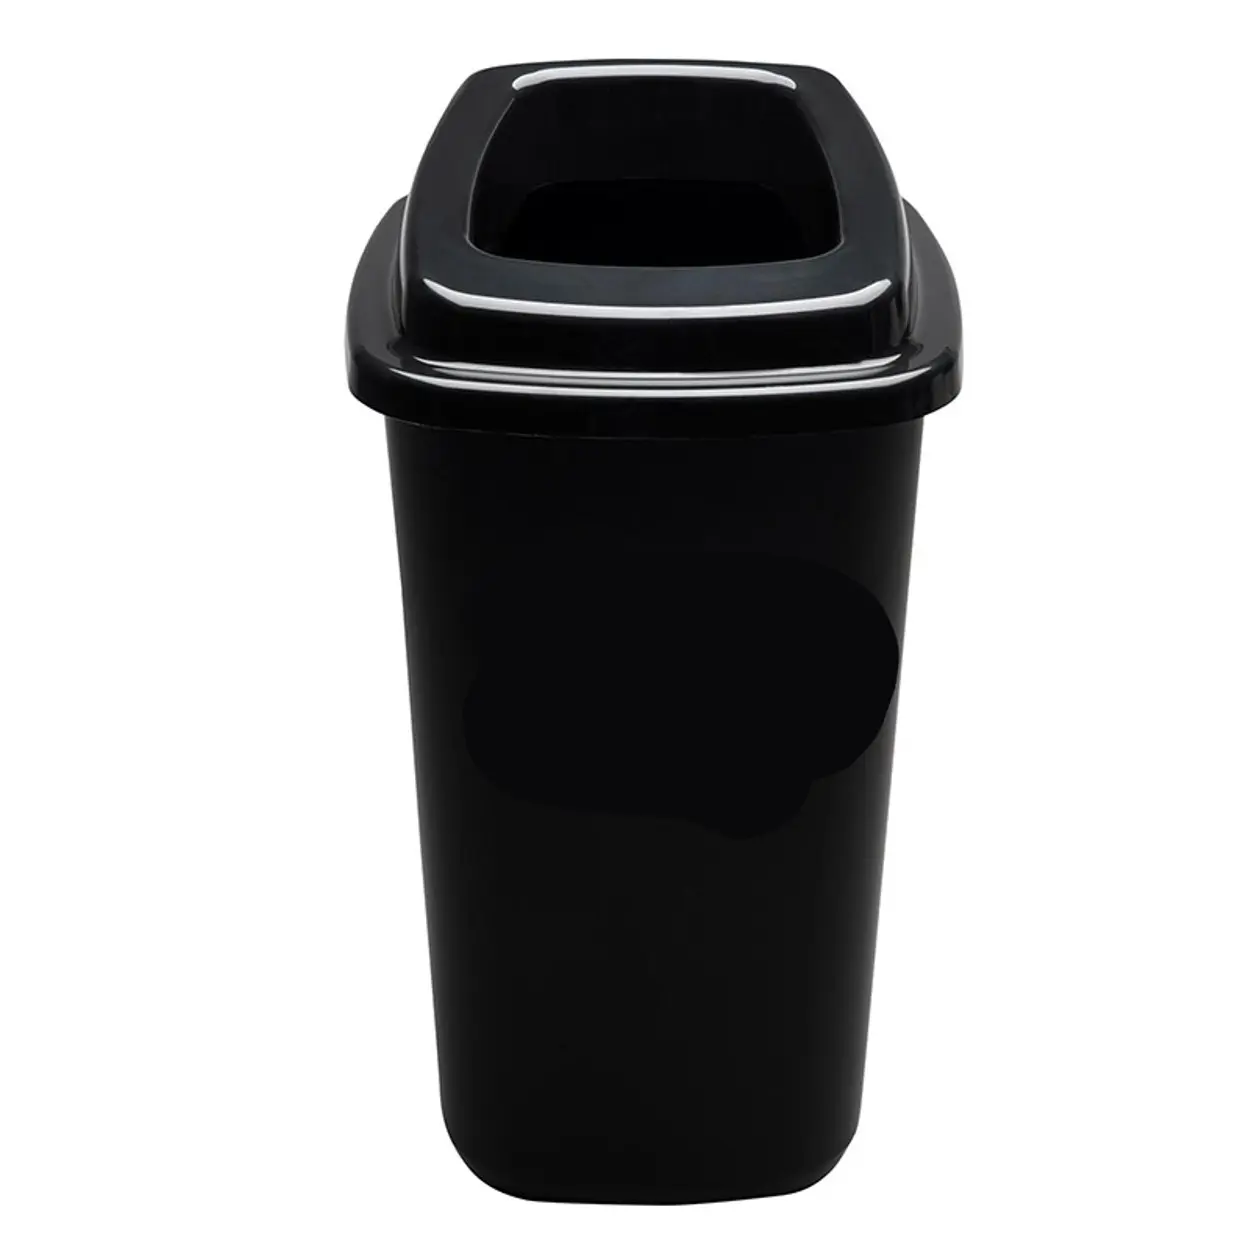 Plastový kôš na triedený odpad, 45 l, čierna